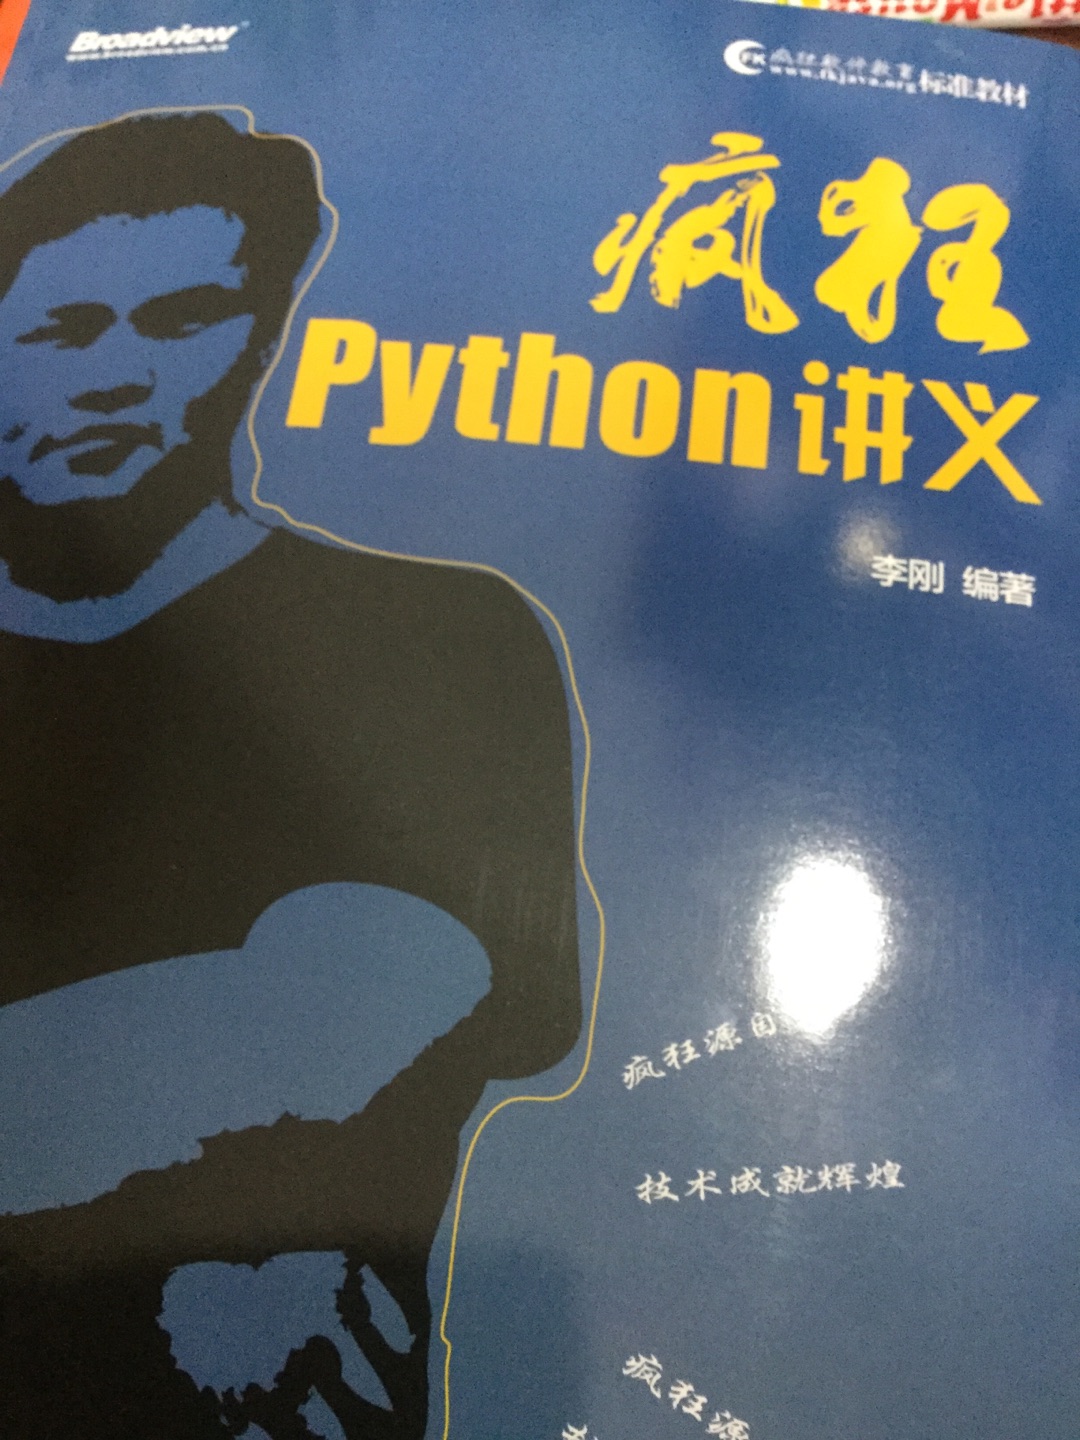 刚刚看，主要是大家都说java版本的不错，因此买了python 版本的，应该也不会差，这python3的教程